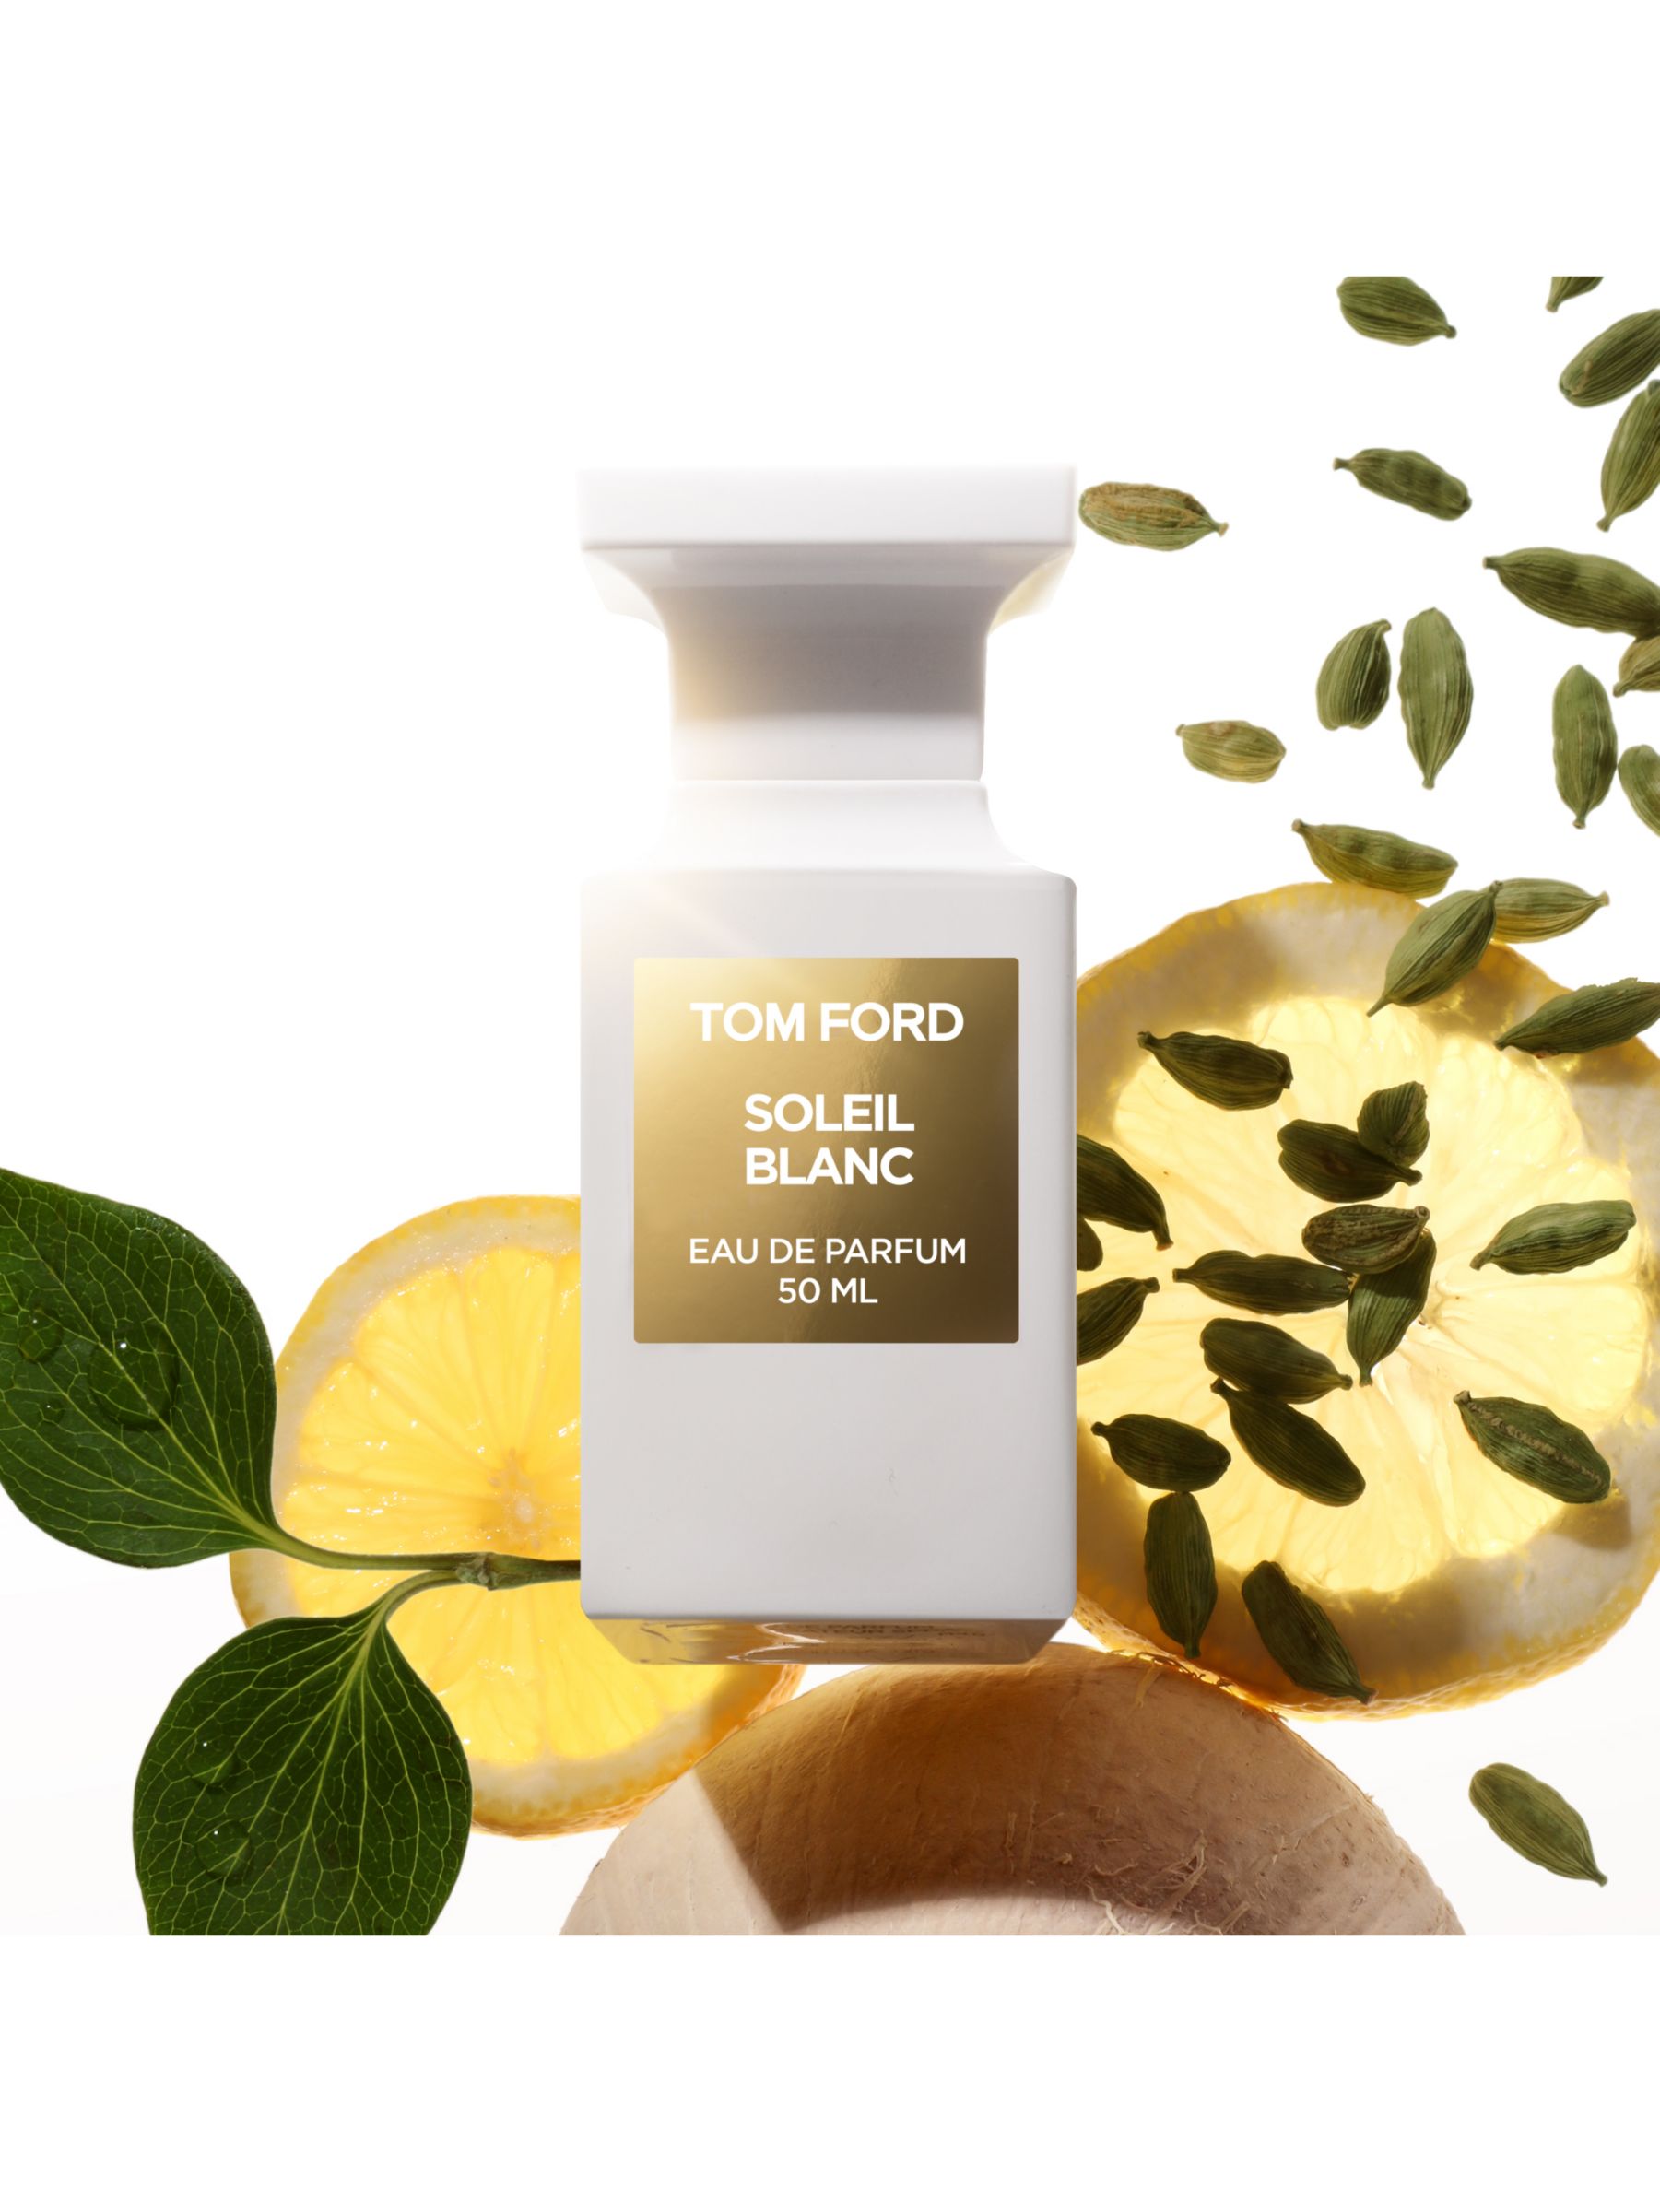 TOM FORD Private Blend Soleil Blanc Eau de Parfum, 50ml 2